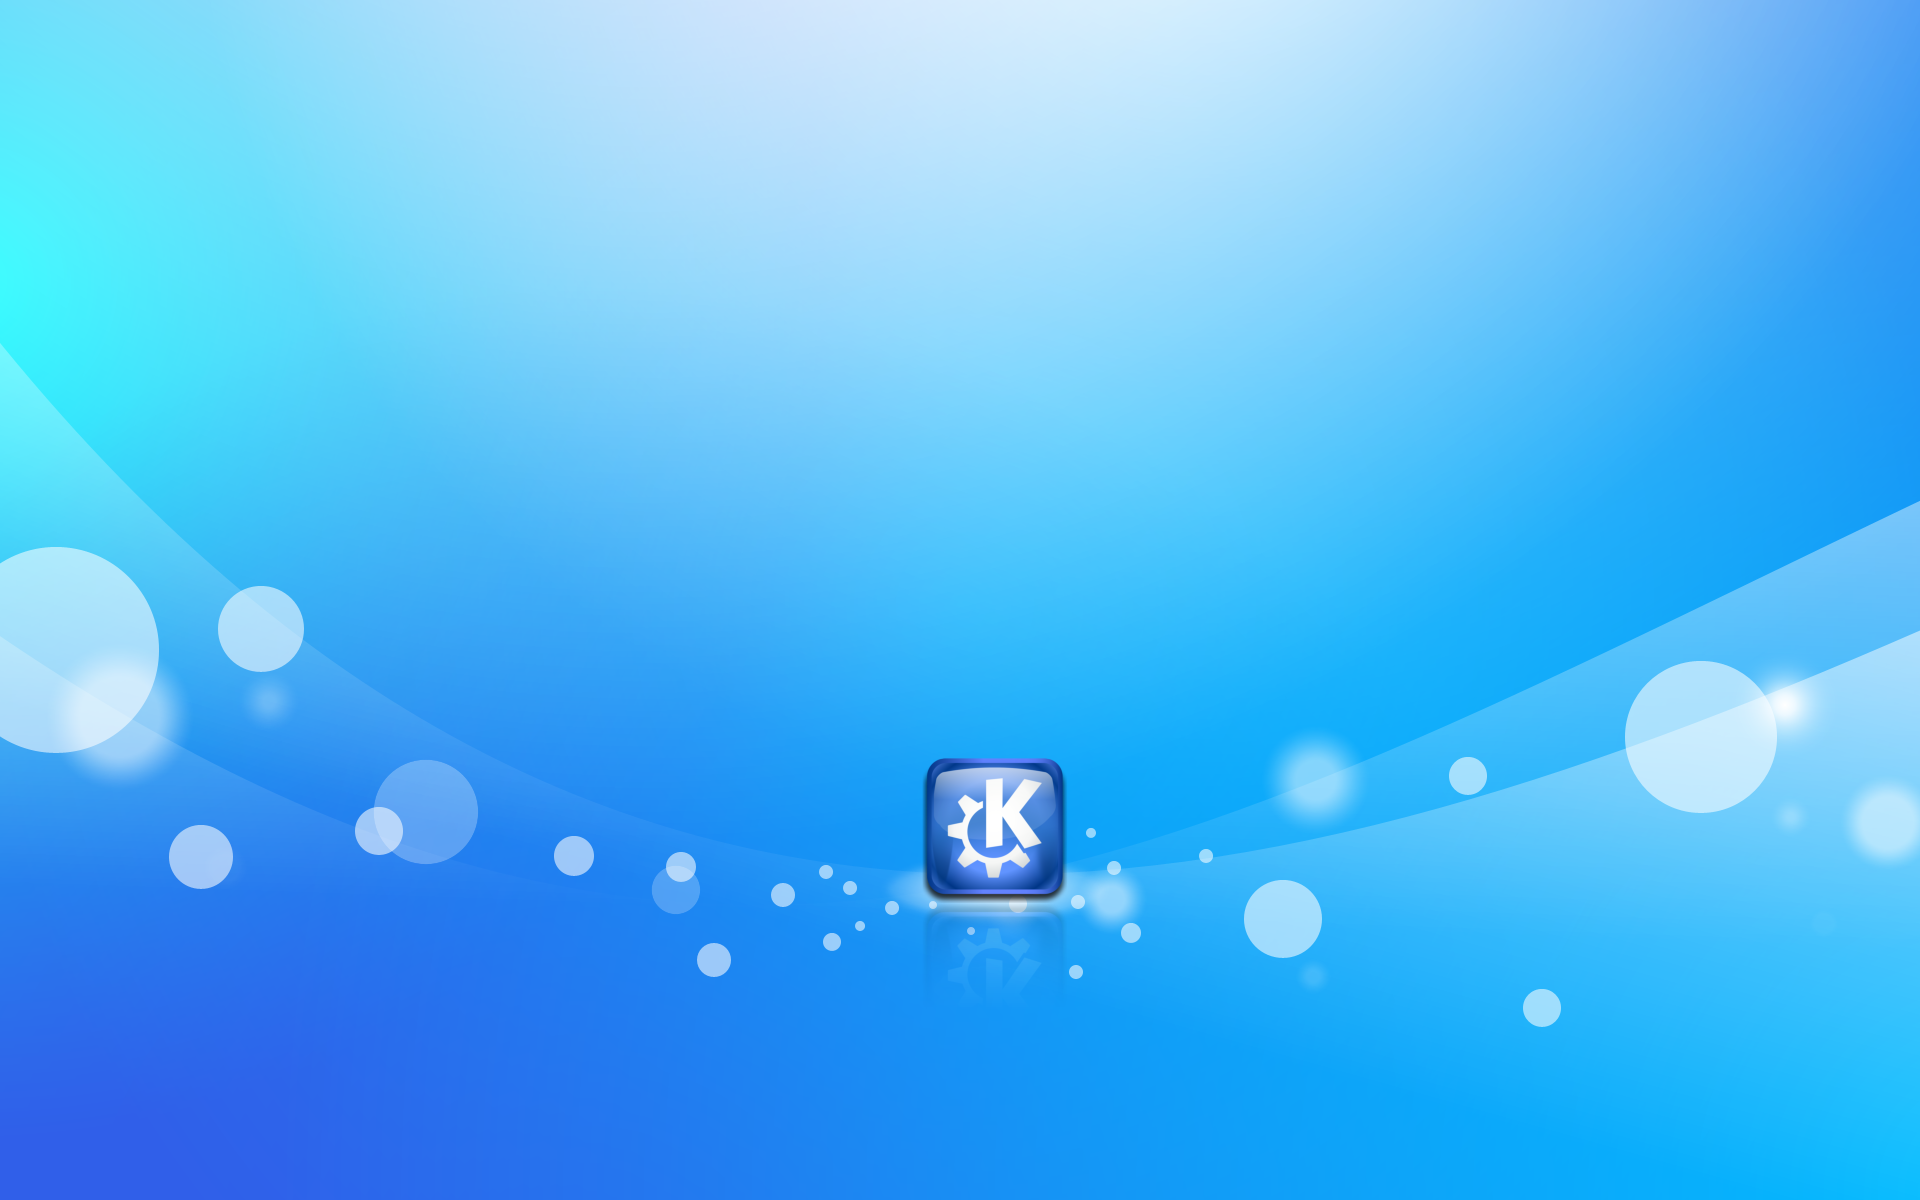 Đẹp mắt và không gian làm việc hoàn hảo, hình nền KDE Wallpaper sẽ nâng cao hiệu quả công việc của bạn trong các bài thuyết trình và trình chiếu. Hãy xem hình ảnh liên quan ngay để khám phá sức mạnh của KDE Wallpaper!